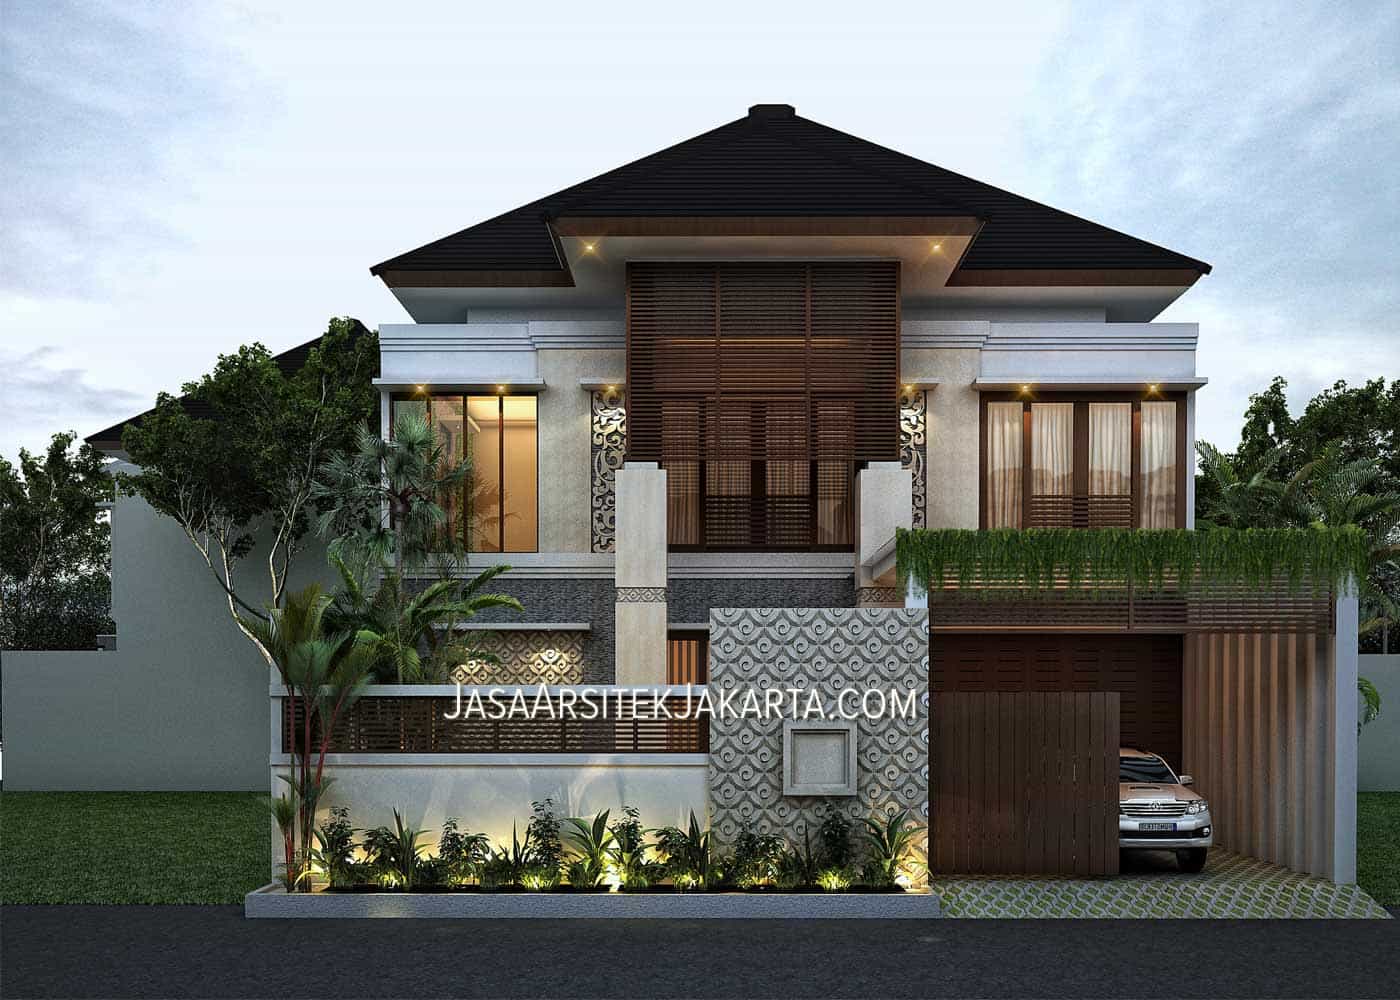 Anggun Desain Rumah Mewah Di Jakarta 83 Renovasi Perencanaan Desain Rumah dengan Desain Rumah Mewah Di Jakarta